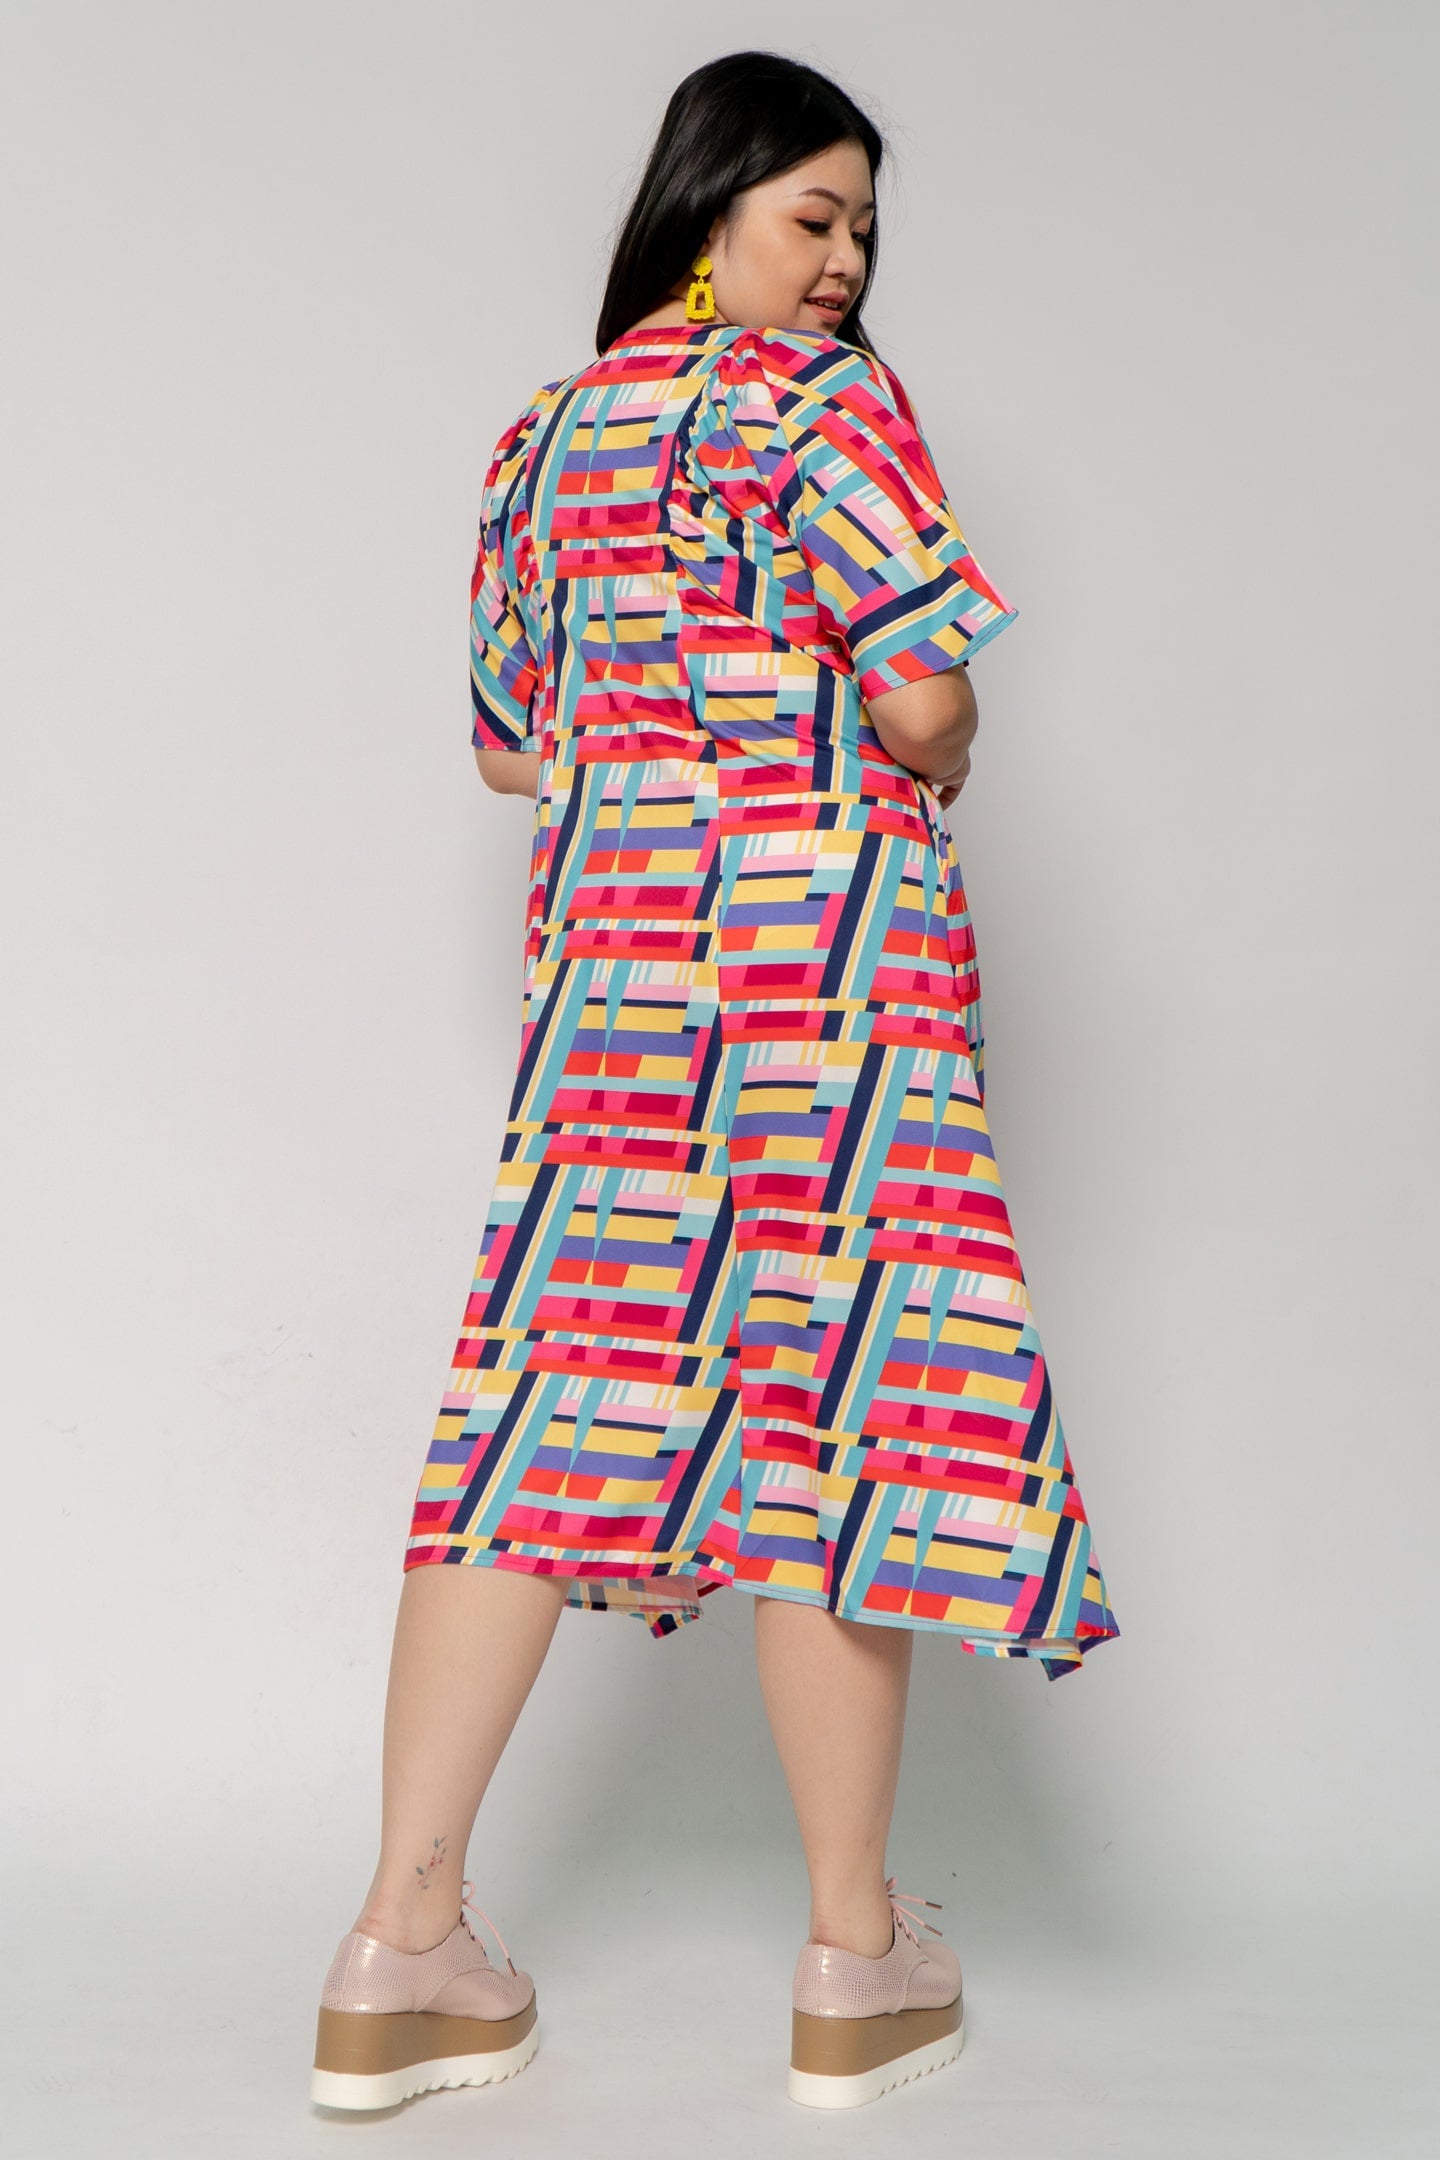 Whitney V Dress in Rainbow Geometric